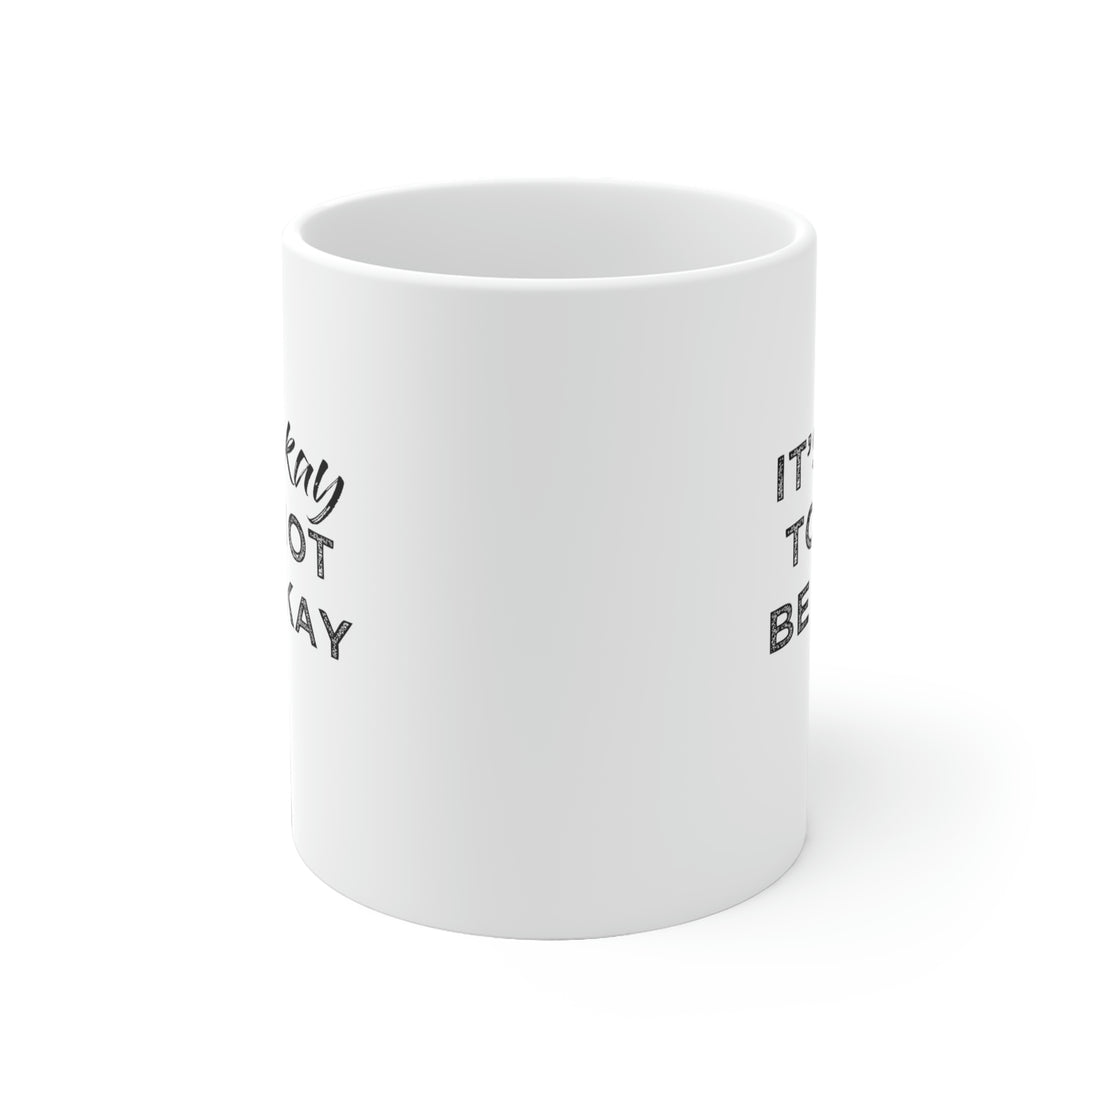 Its Ok To Not Be Ok - White Ceramic Mug 2 sizes Available